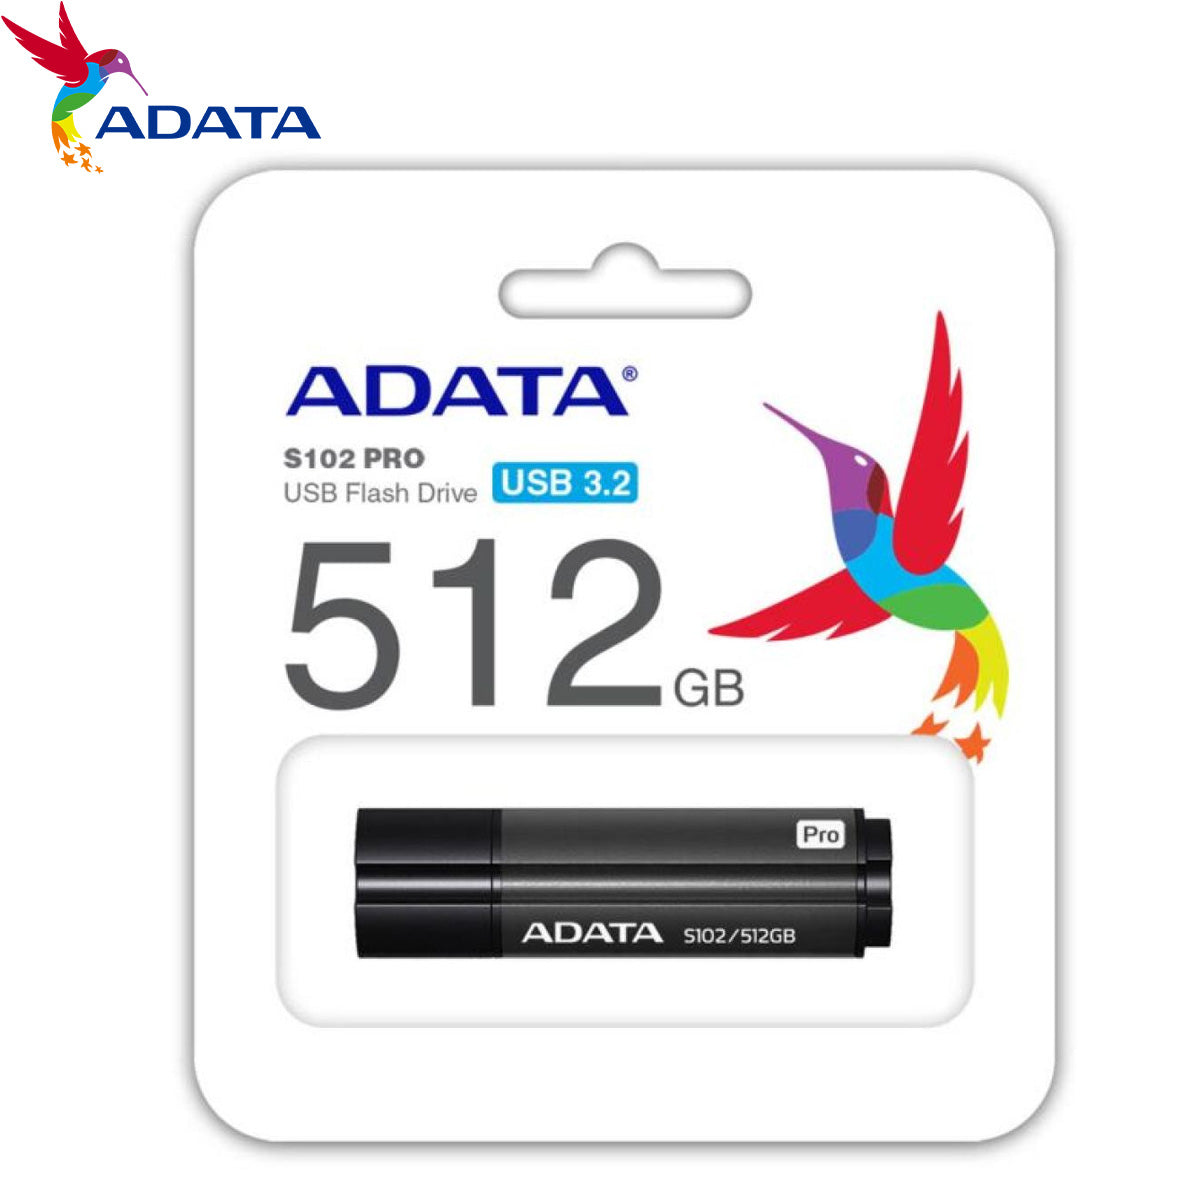 ADATA S102 Pro Flash Drive 512GB Ultra Fast USB 3.0 Read Speed 100 MB/S, Grey